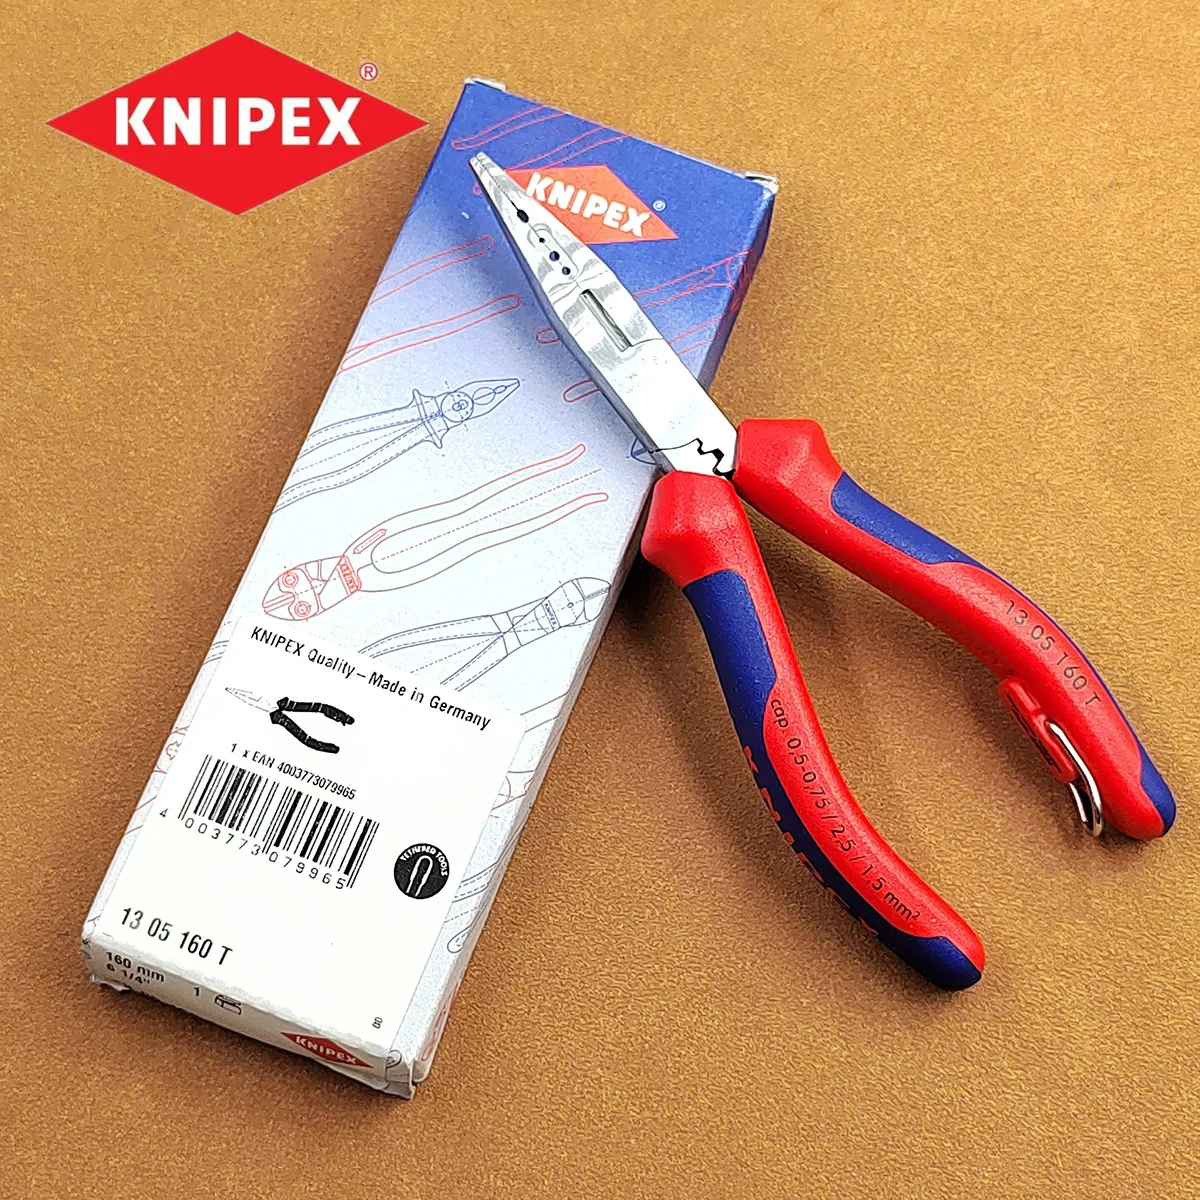 KNIPEX-electricista Parker de Alemania con hebilla de cuerda de seguridad,  13, 05, 160 T /1305160T